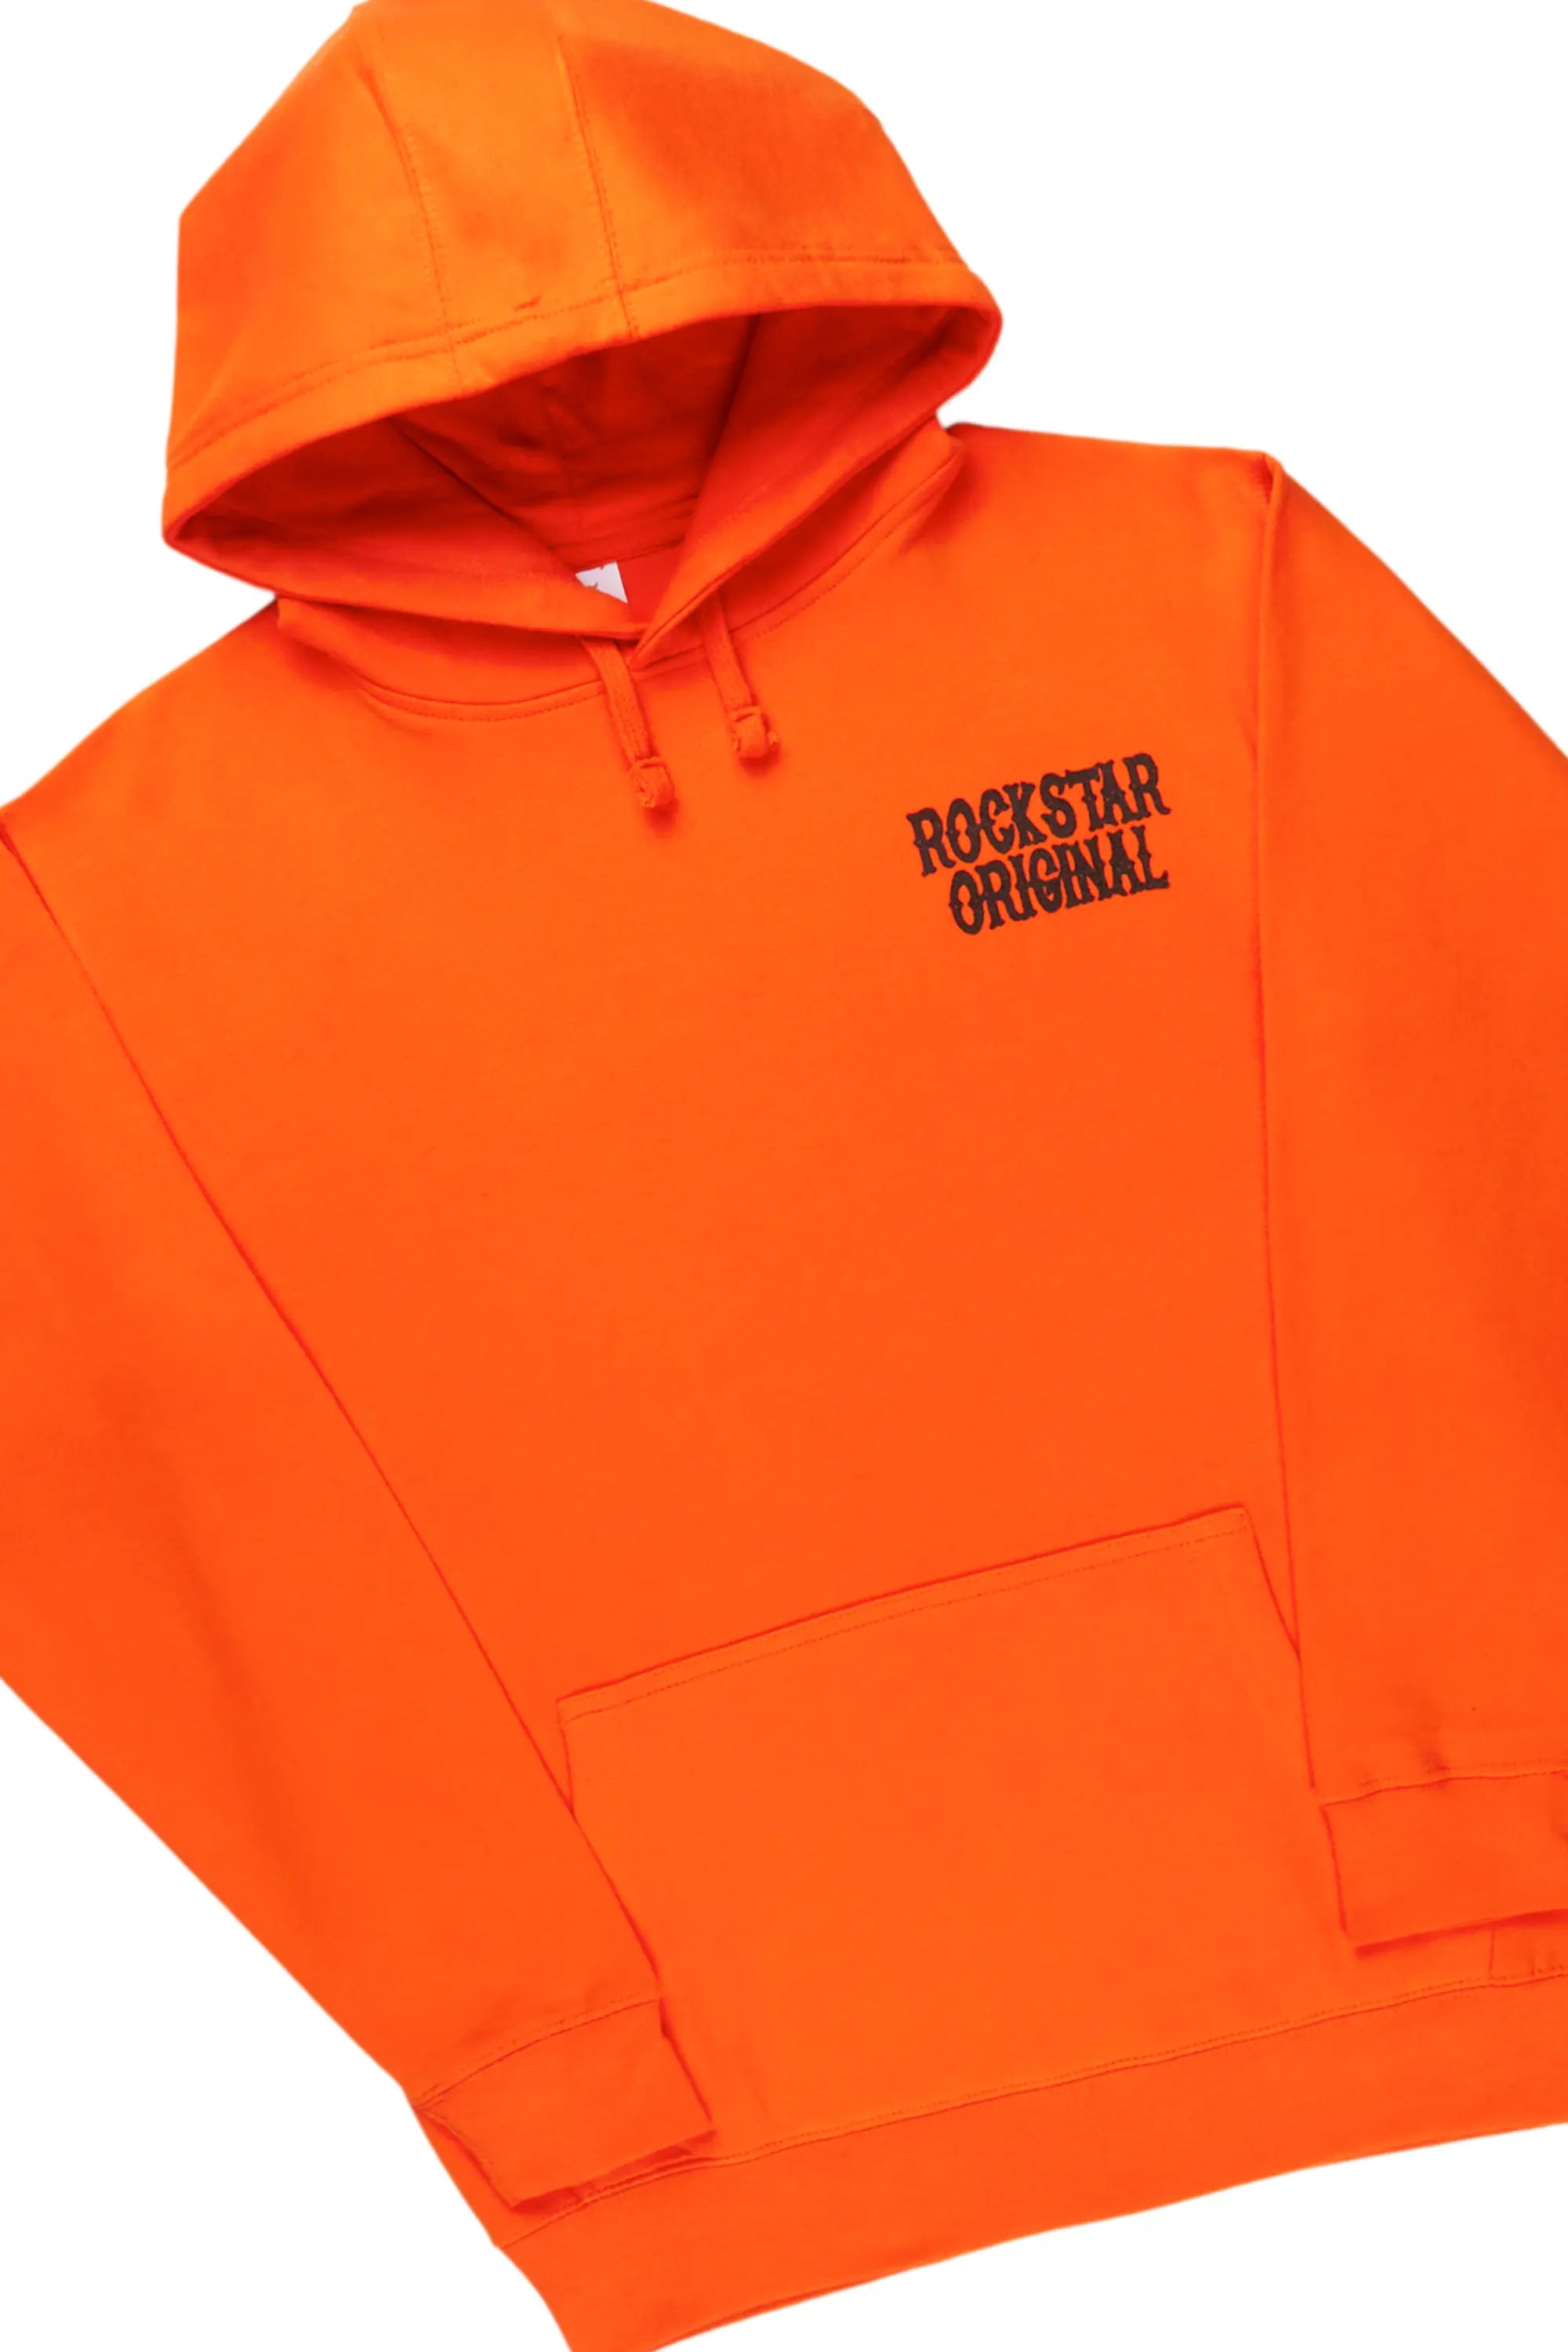 Deeler Orange/Black Hoodie Super Stacked Flare Track Set